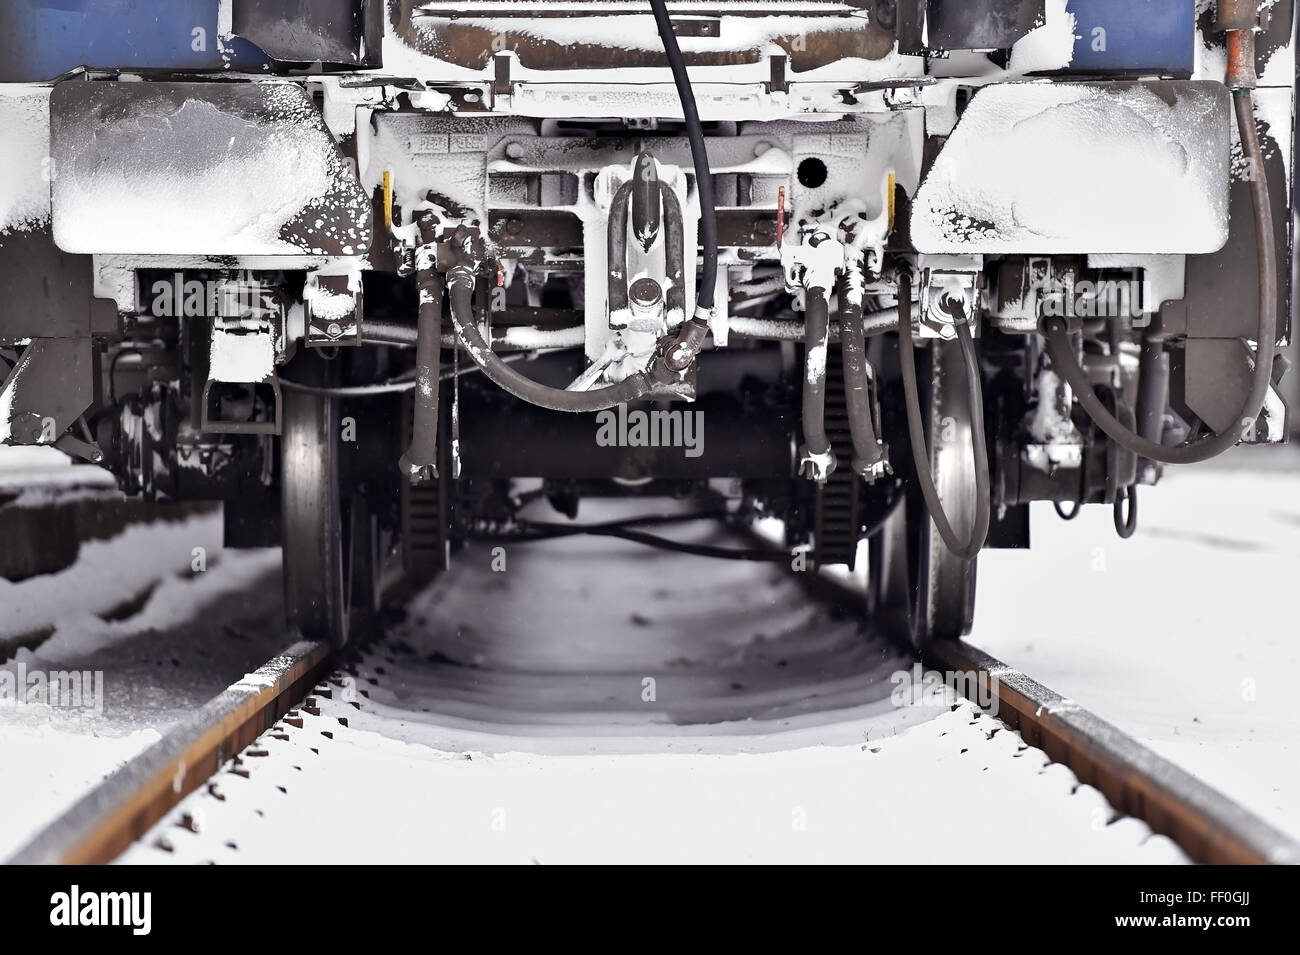 Dettaglio shot con congelati vagone treno tamponi e links di collegamento in inverno Foto Stock